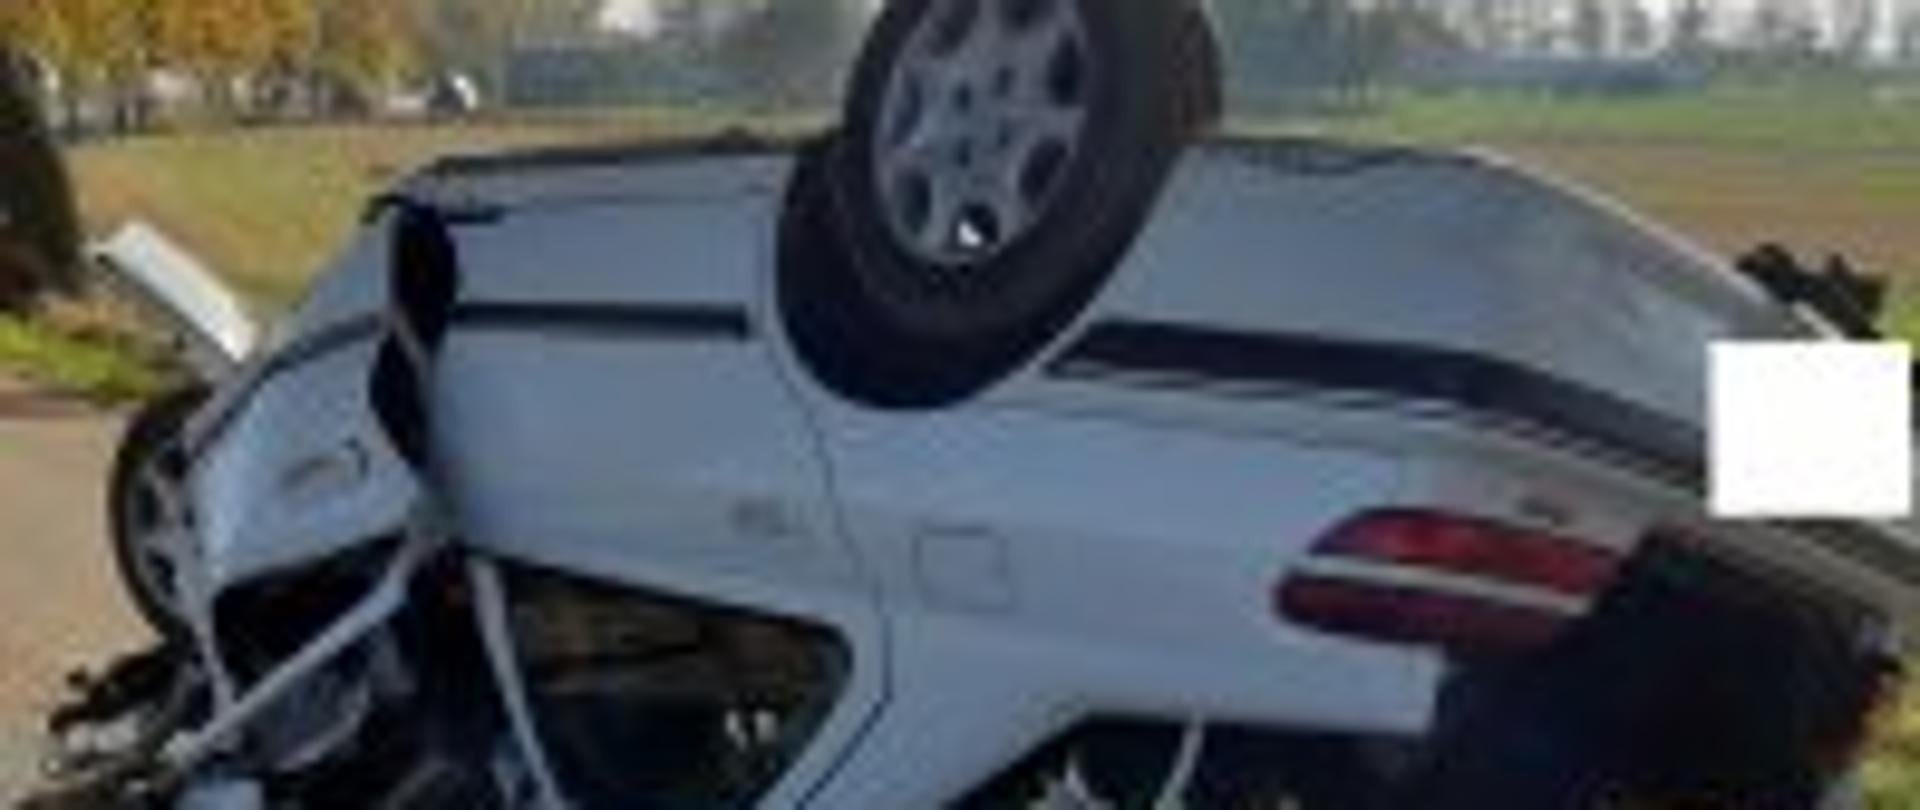 Biały samochód osobowy znajdujący się na dachu na drodze asfaltowej. Pojazd ma rozbity przód oraz otwartą tylna klapę bagażnika.